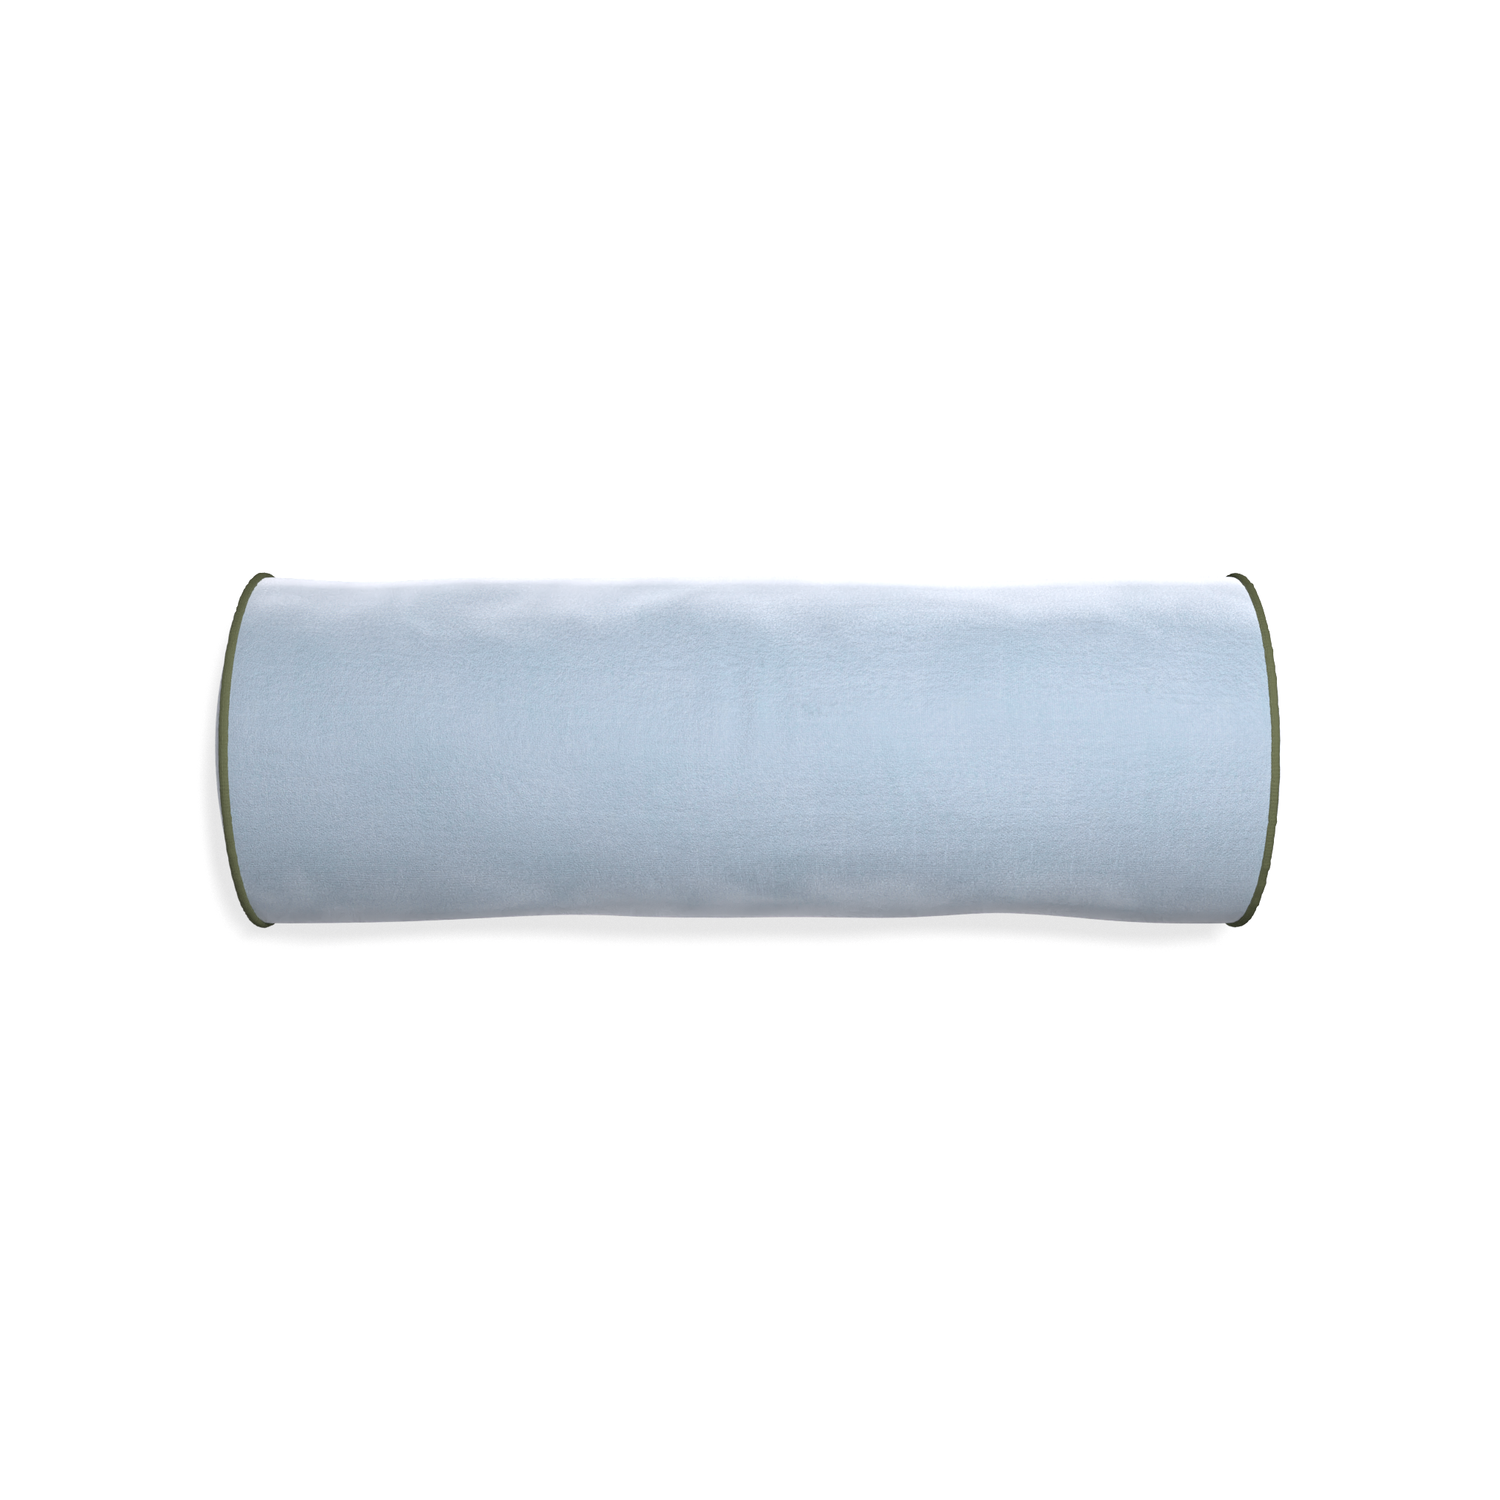 Bolster sky velvet custom pillow with f piping on white background